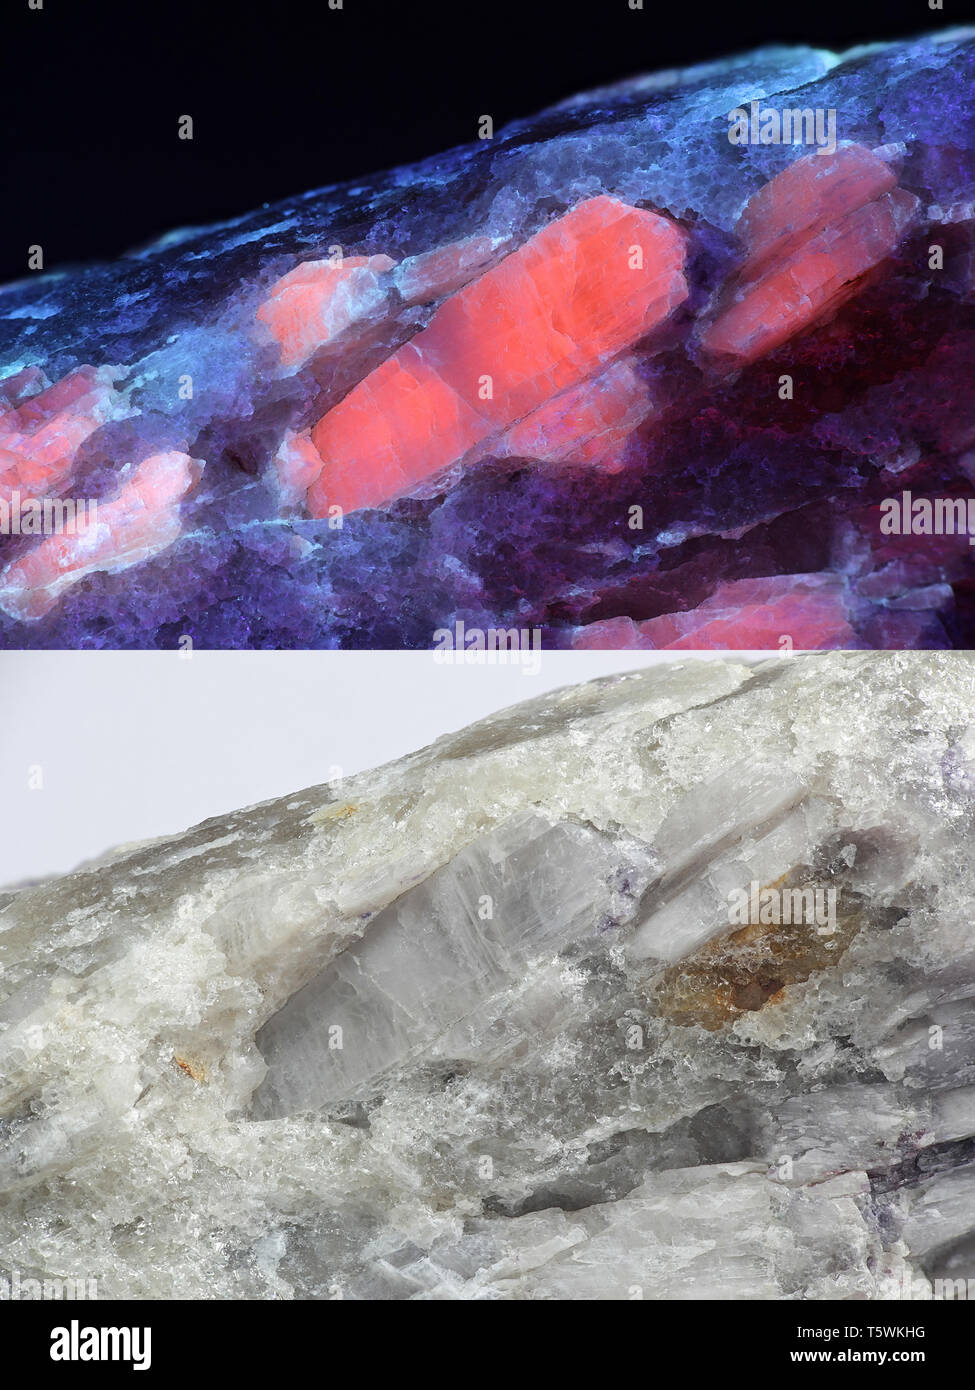 Les cristaux du minerai de lithium industriel majeur le spodumène montrant la fluorescence rouge dans la lumière ultraviolette (365 nm). Image inférieure même échantillon en lumière normale. Banque D'Images